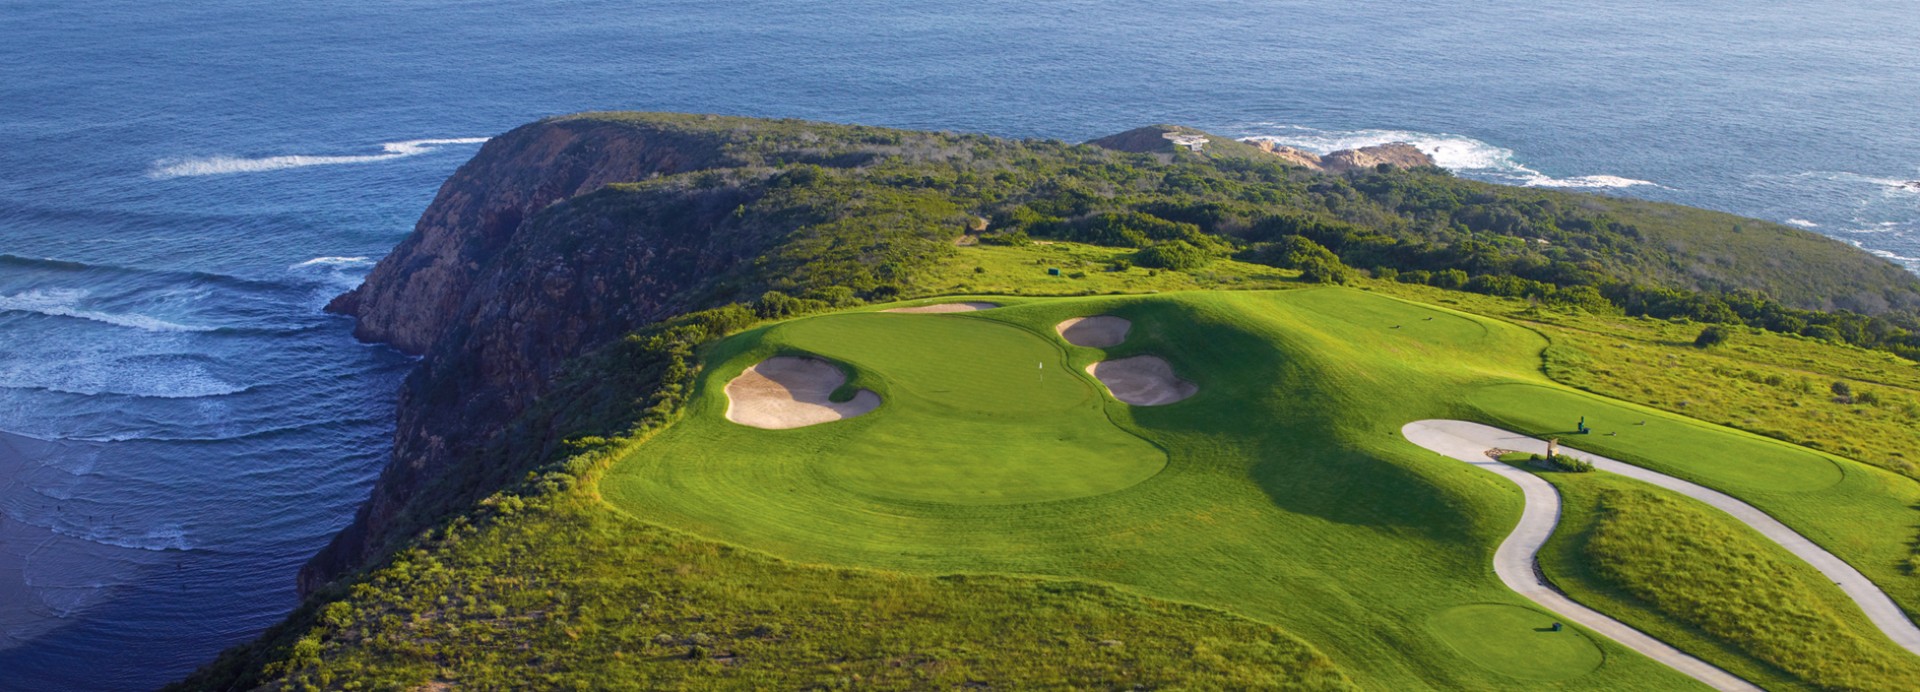 Ernie Els Oubaai Golf Club  | Golfové zájezdy, golfová dovolená, luxusní golf